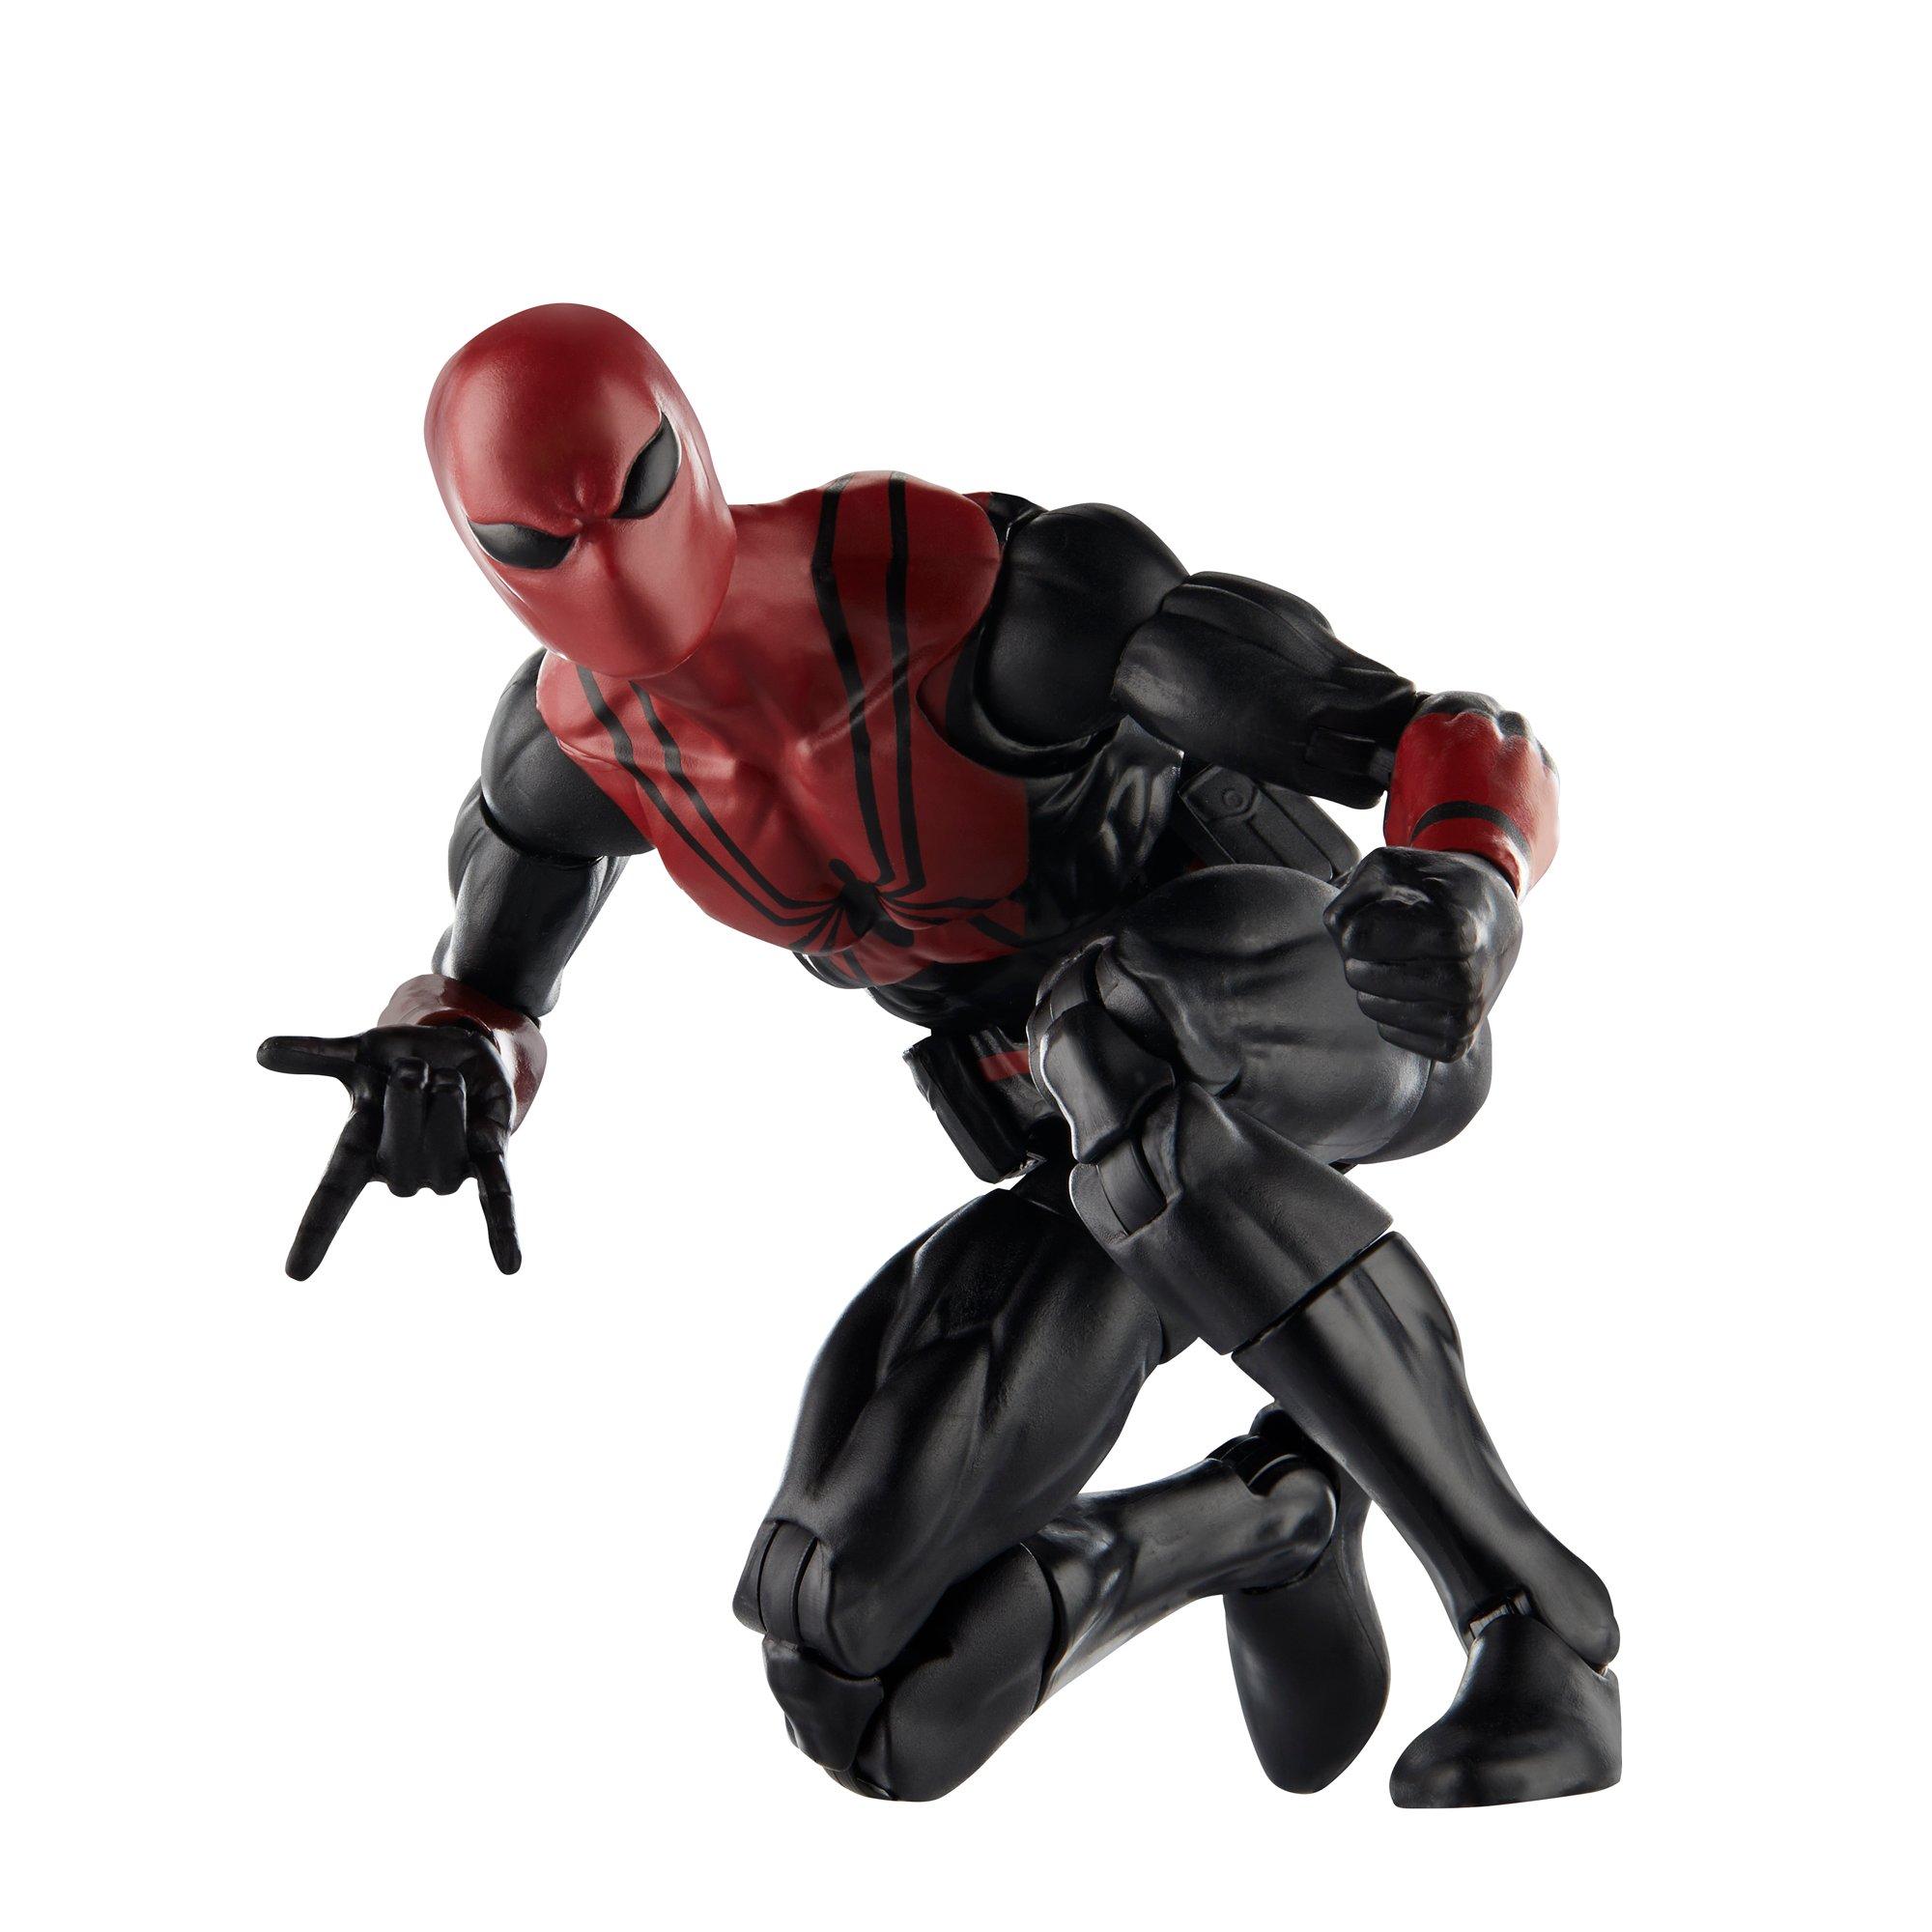 https://media.gamestop.com/i/gamestop/20009384_ALT01/Hasbro-Marvel-Legends-Spider-Man-Spider-Shot-6-in-Action-Figure?$pdp$